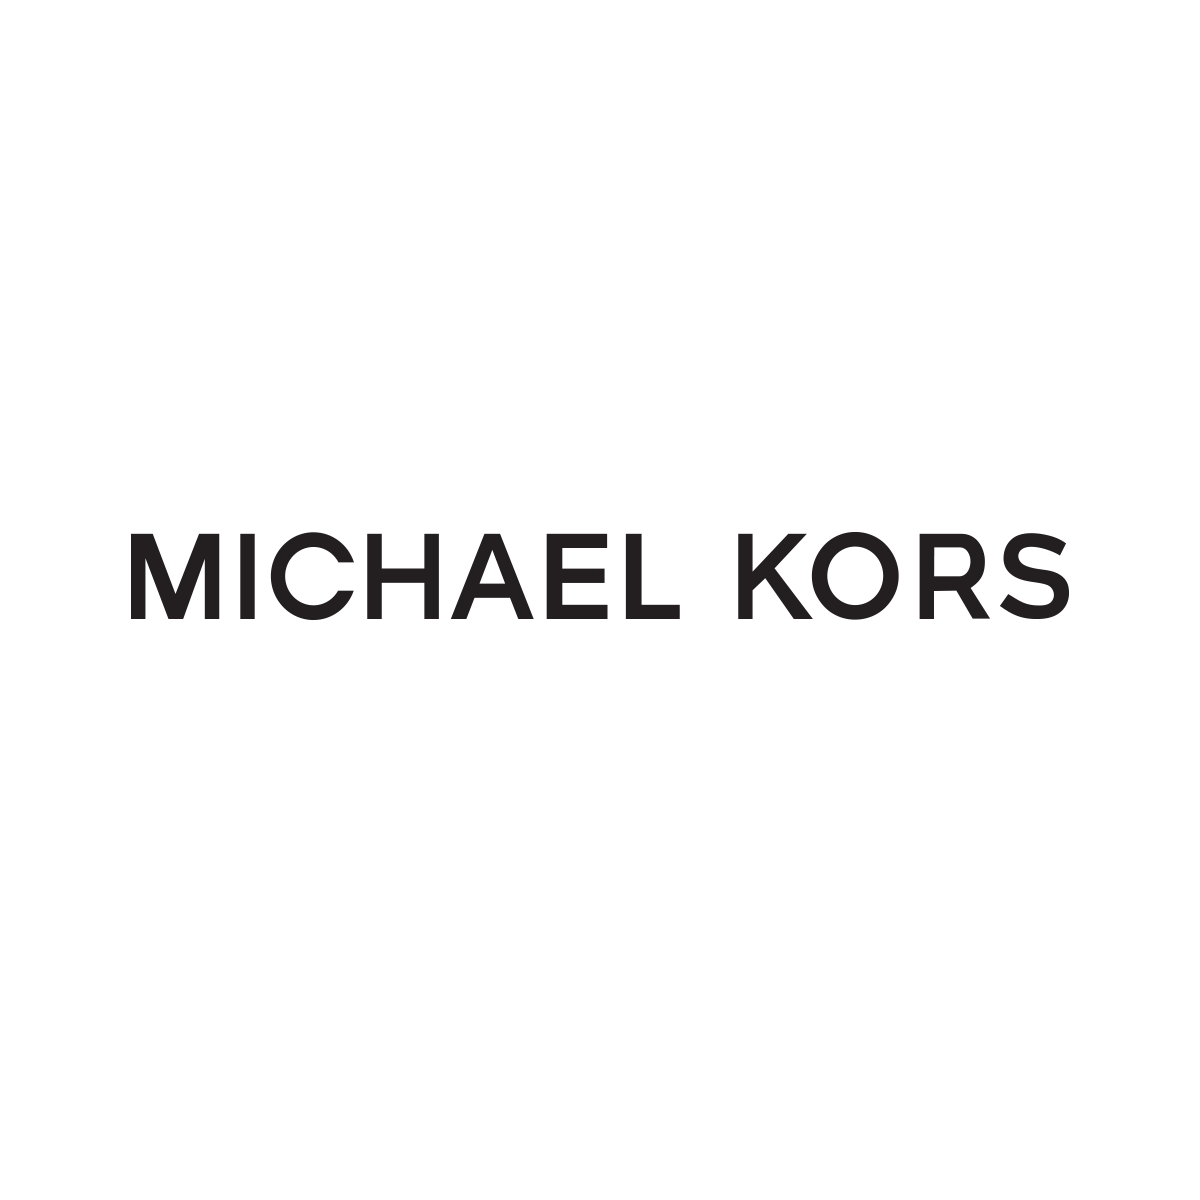 Michael Kors - Saddle Creek